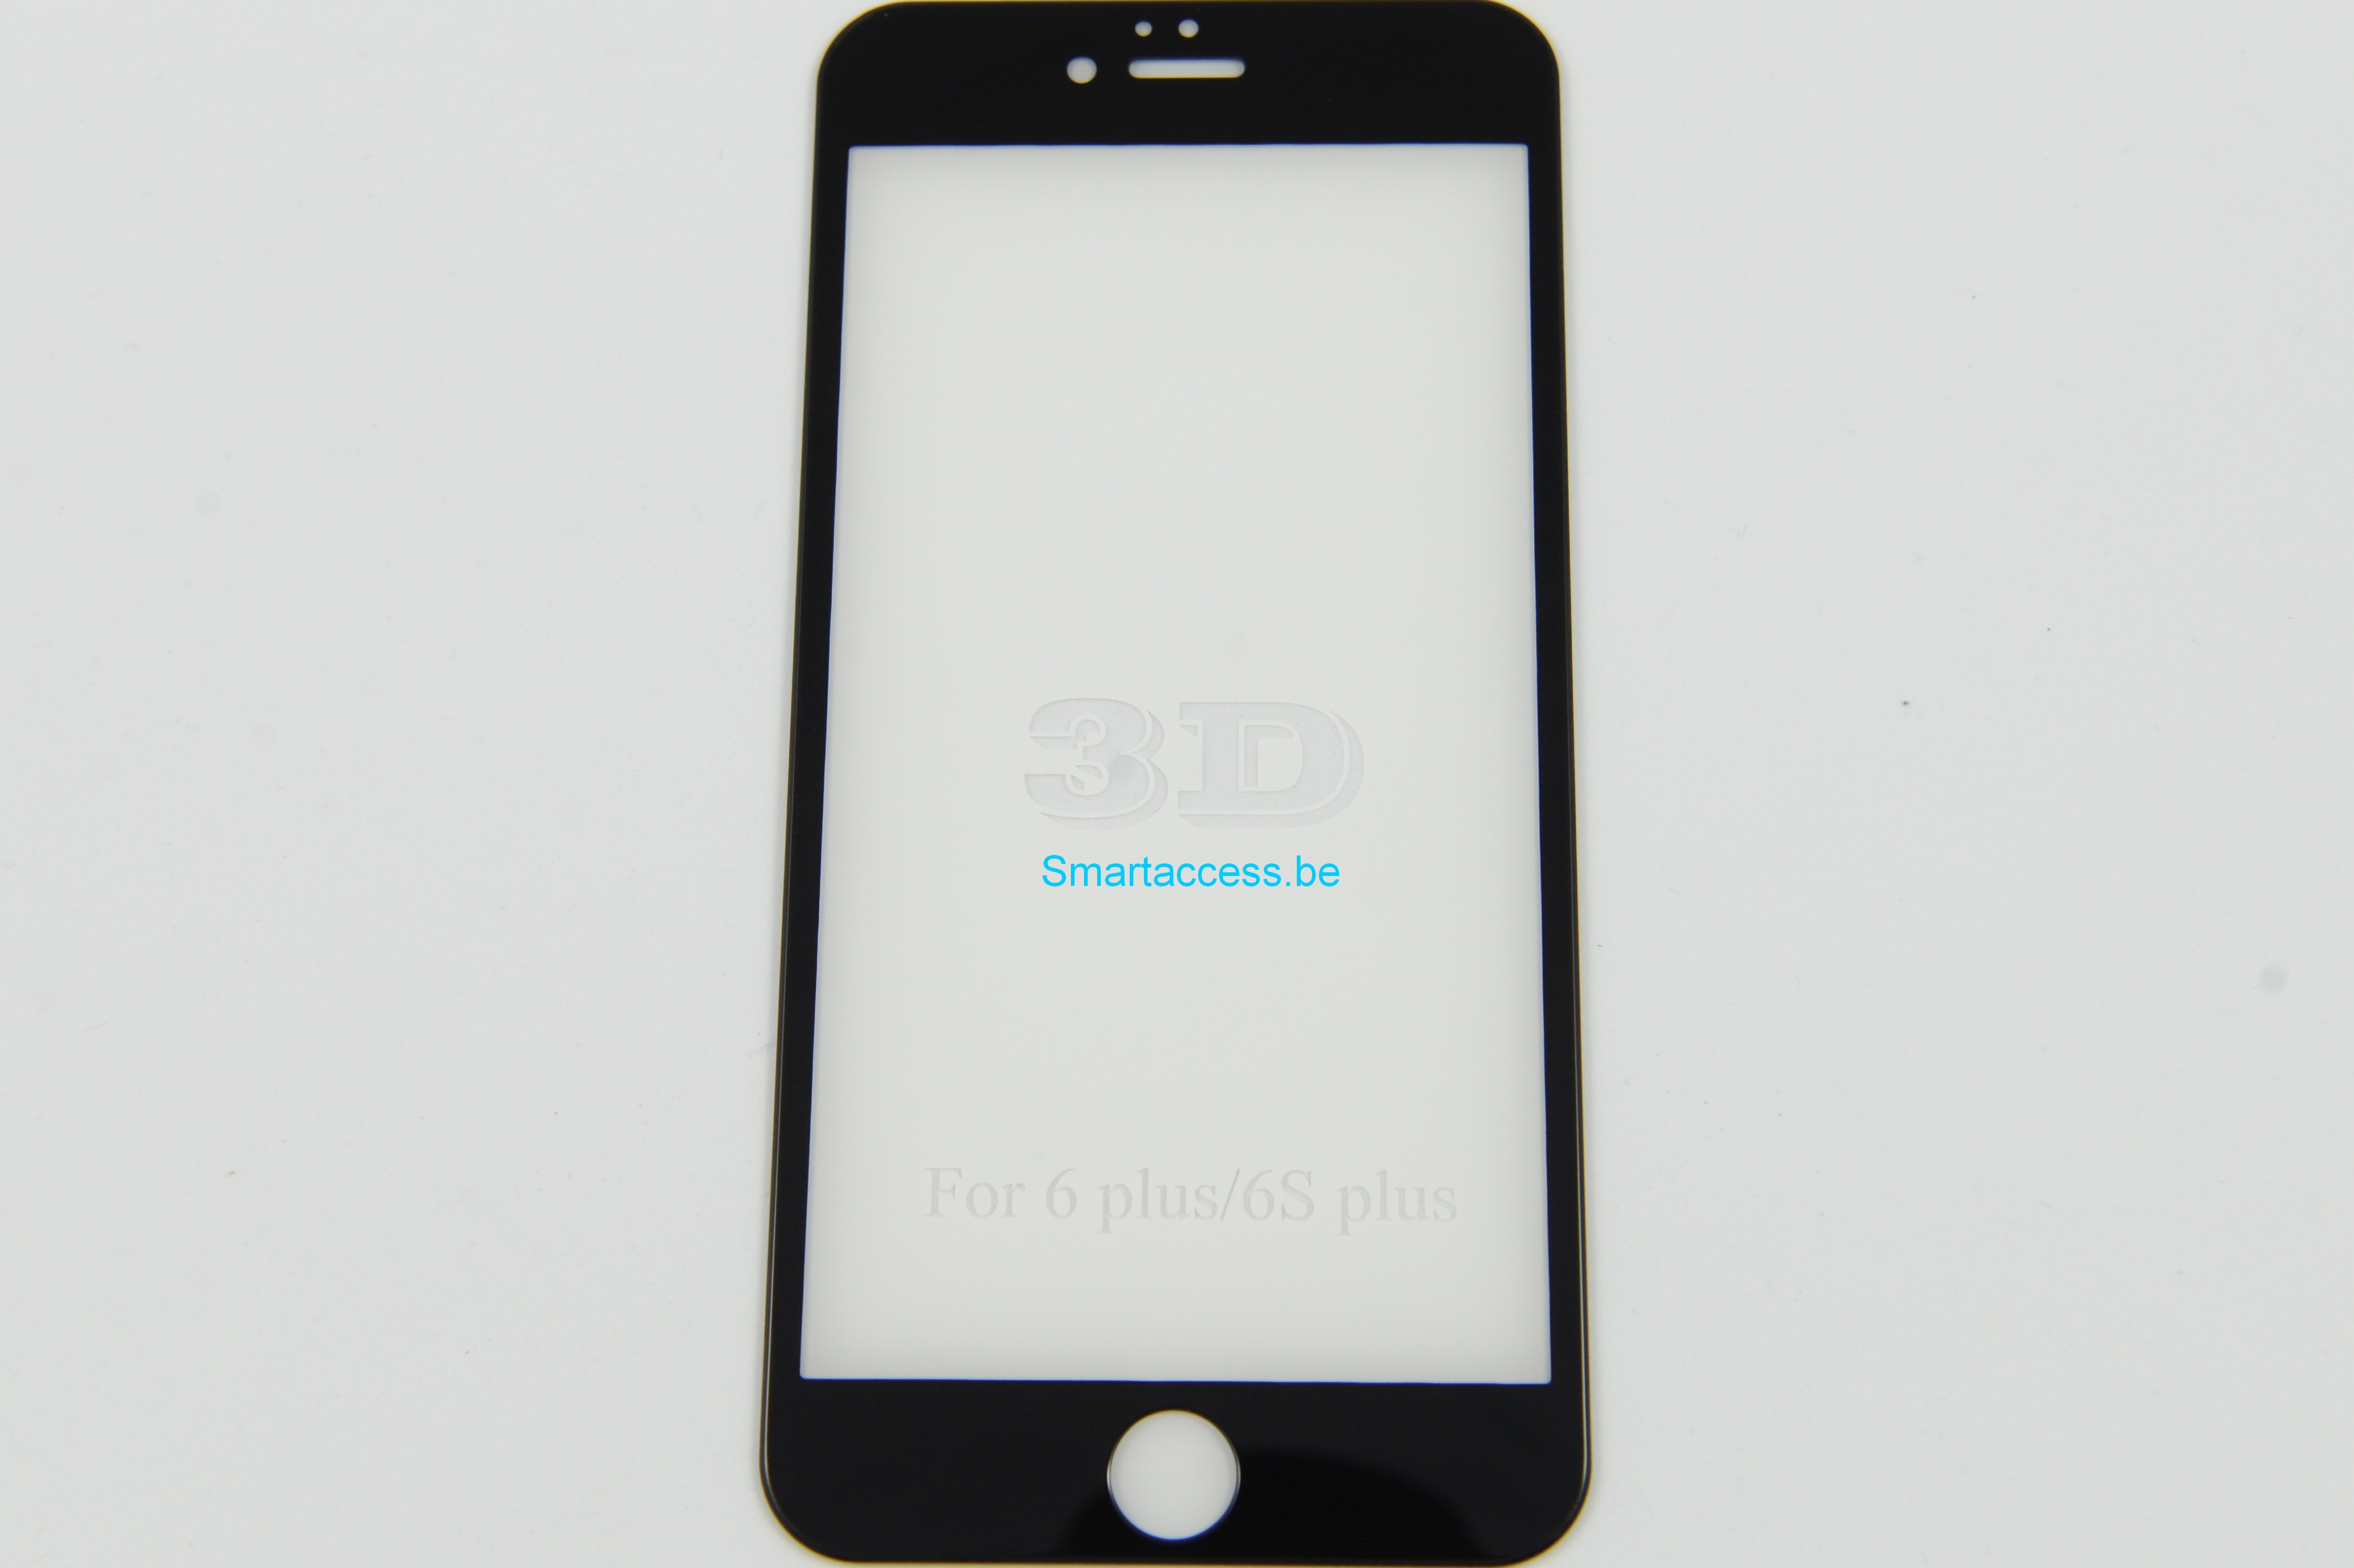 VITRE VERRE TREMPE 3D iPhone 6 Plus/6S Plus, film de protection écran intégral